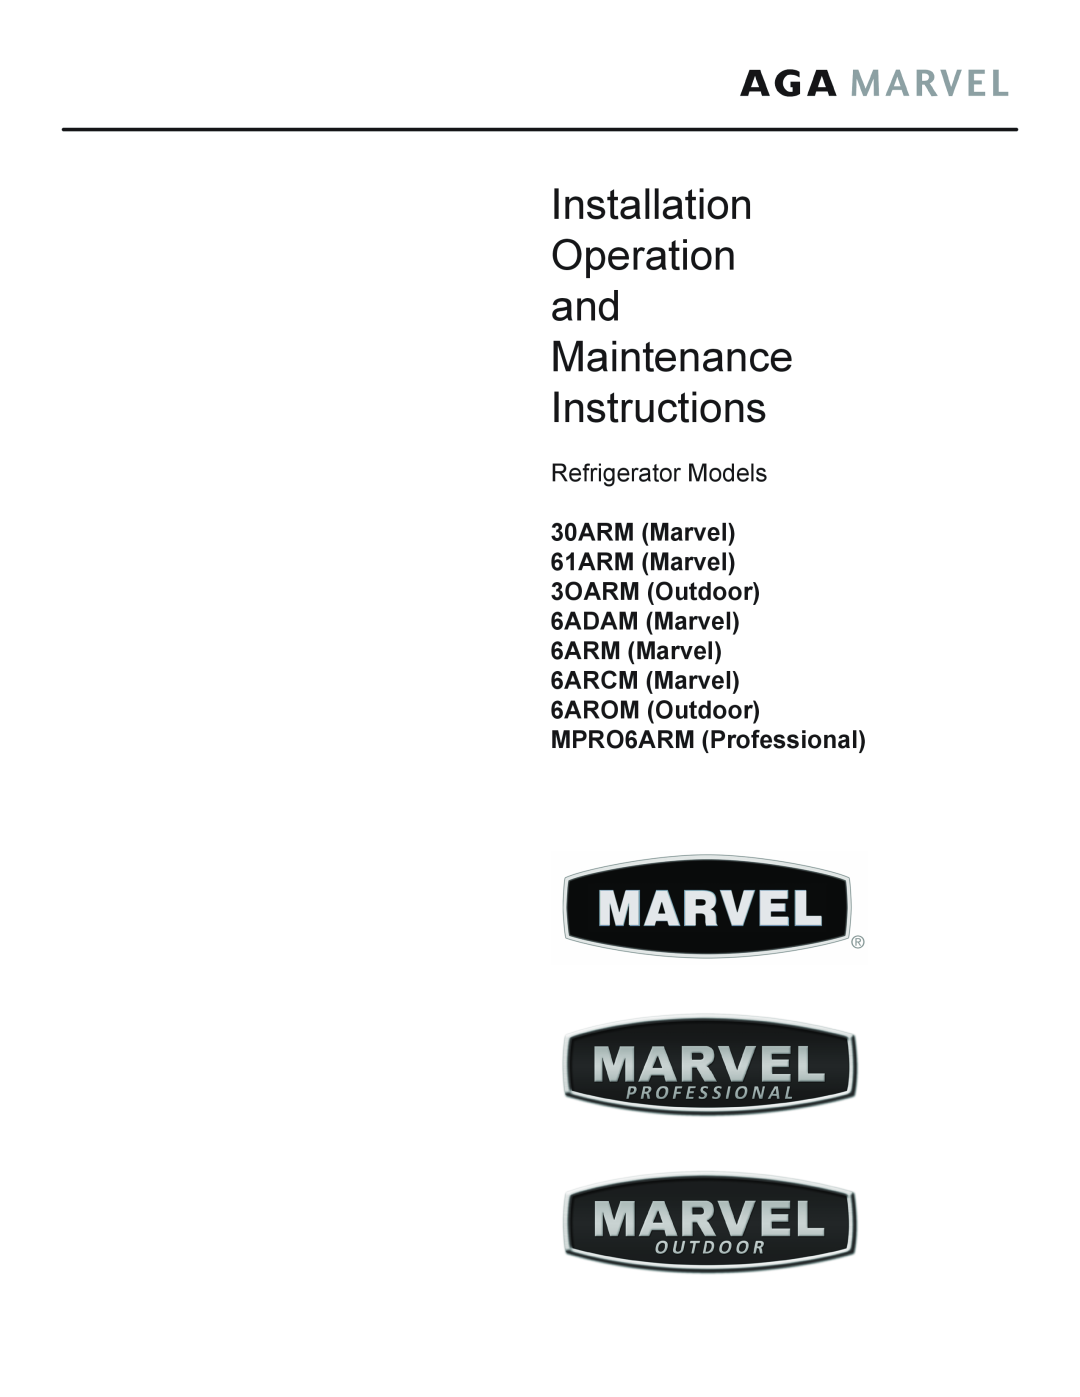 Marvel Industries 61ARMBBOL manual Installation Operation and Maintenance Instructions, Refrigerator Models 